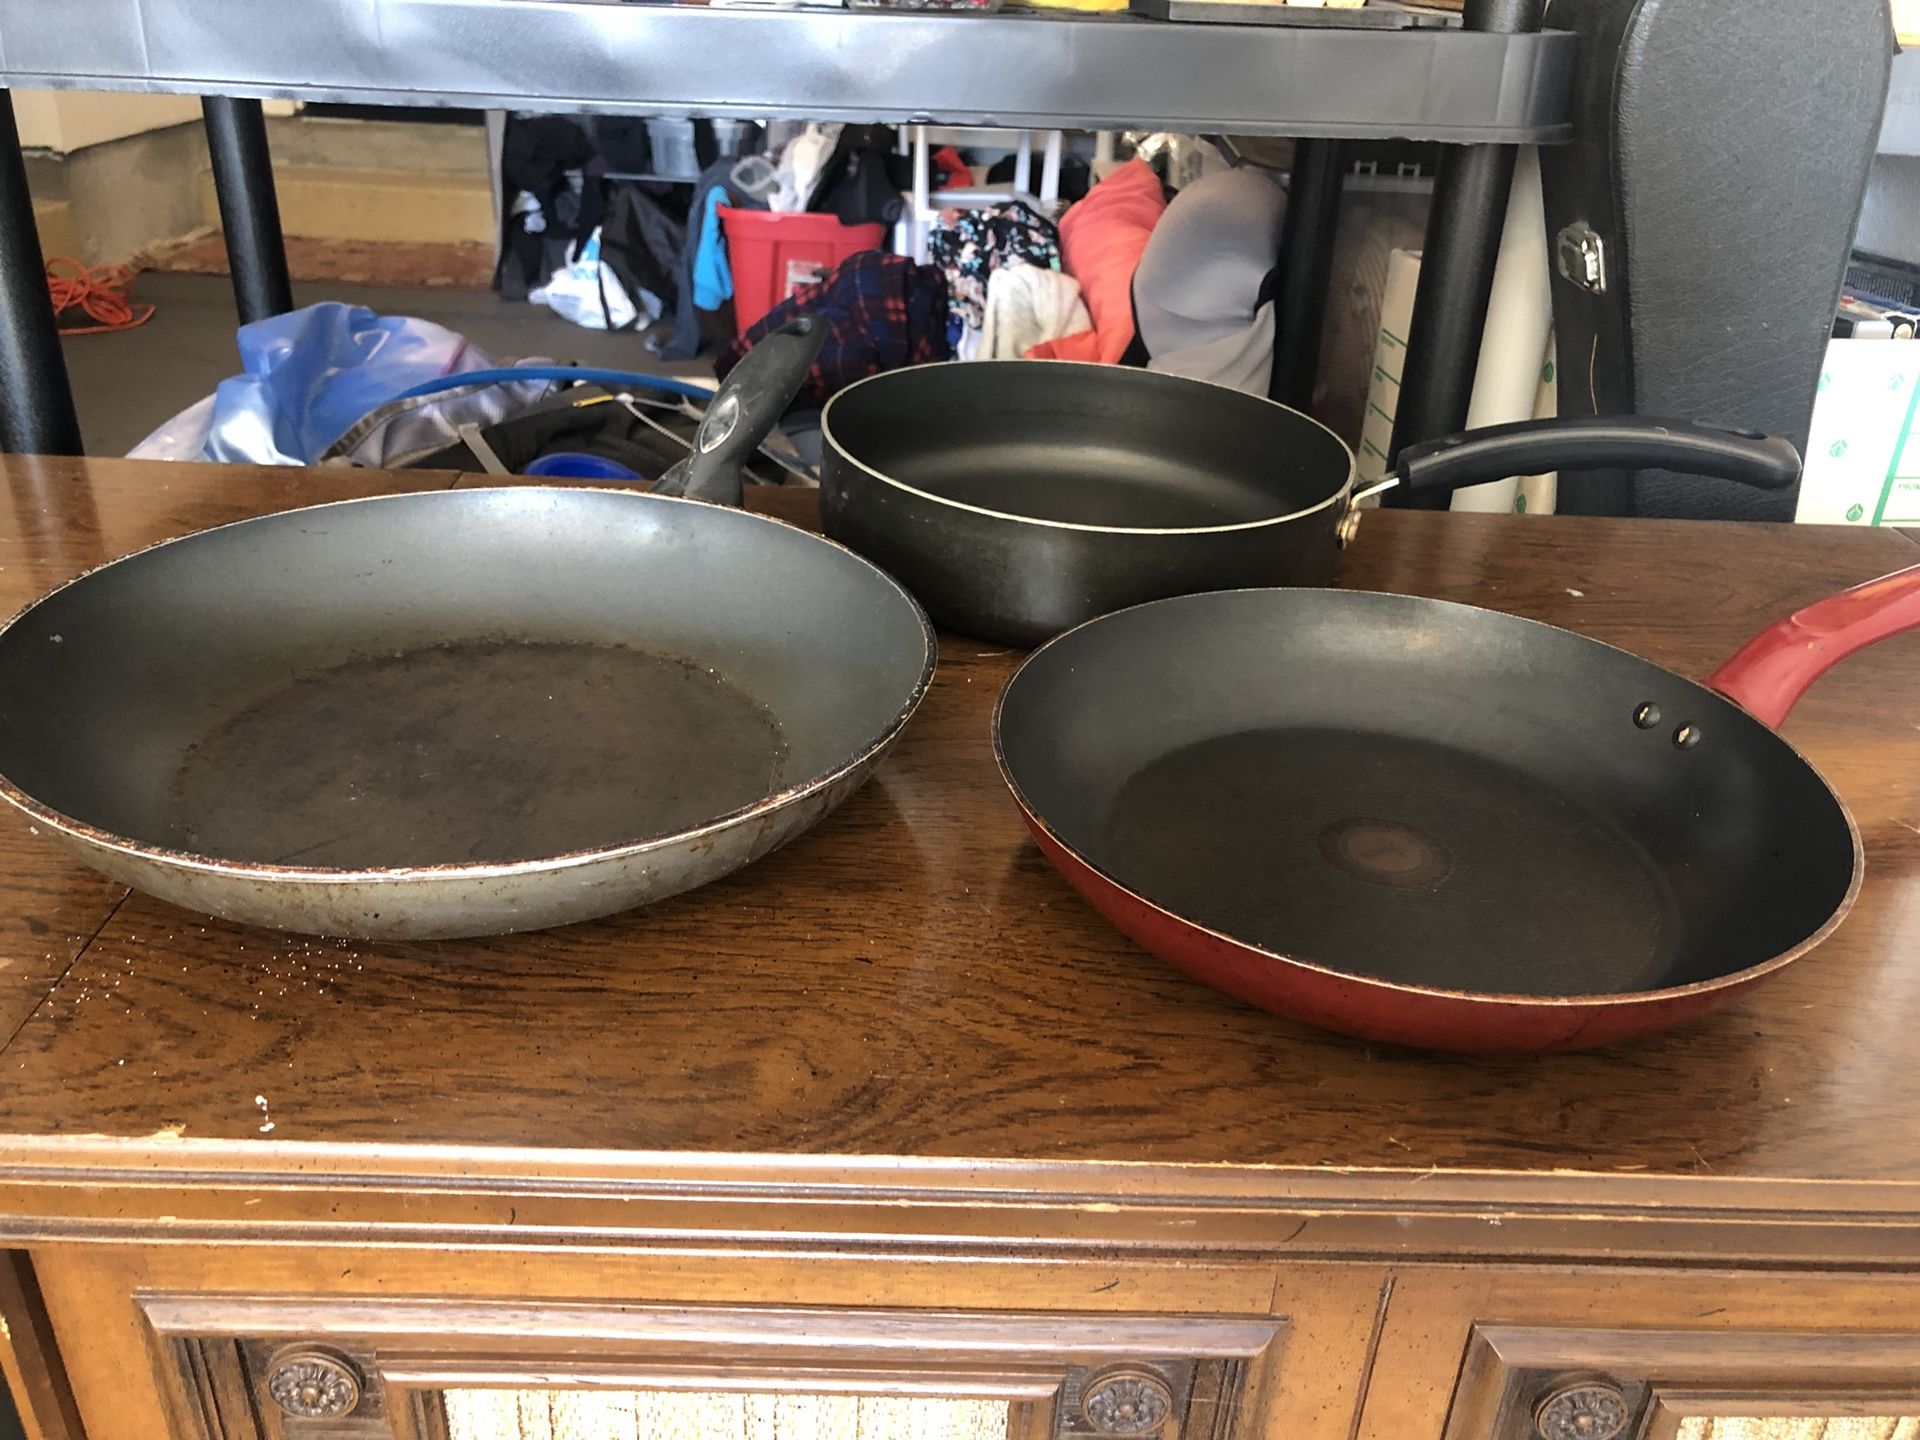 3 circular cooking pans